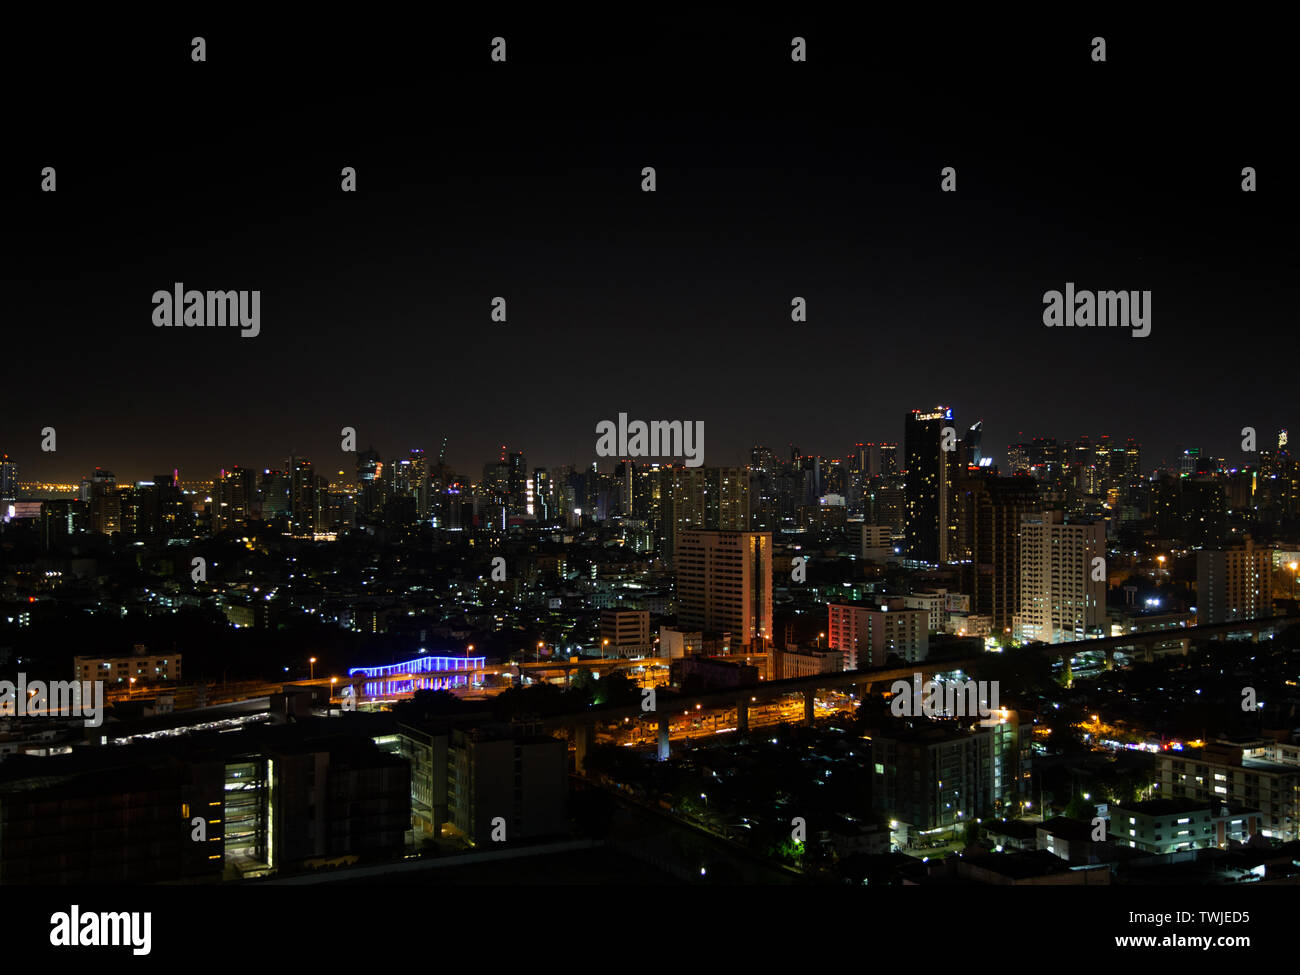 Nigth licht Landschaft der Stadt Bangkok. Hauptstadt Thailands. Uraban lifestyle spen Energie mit Nachtleben als schlaflose Stadt Stockfoto